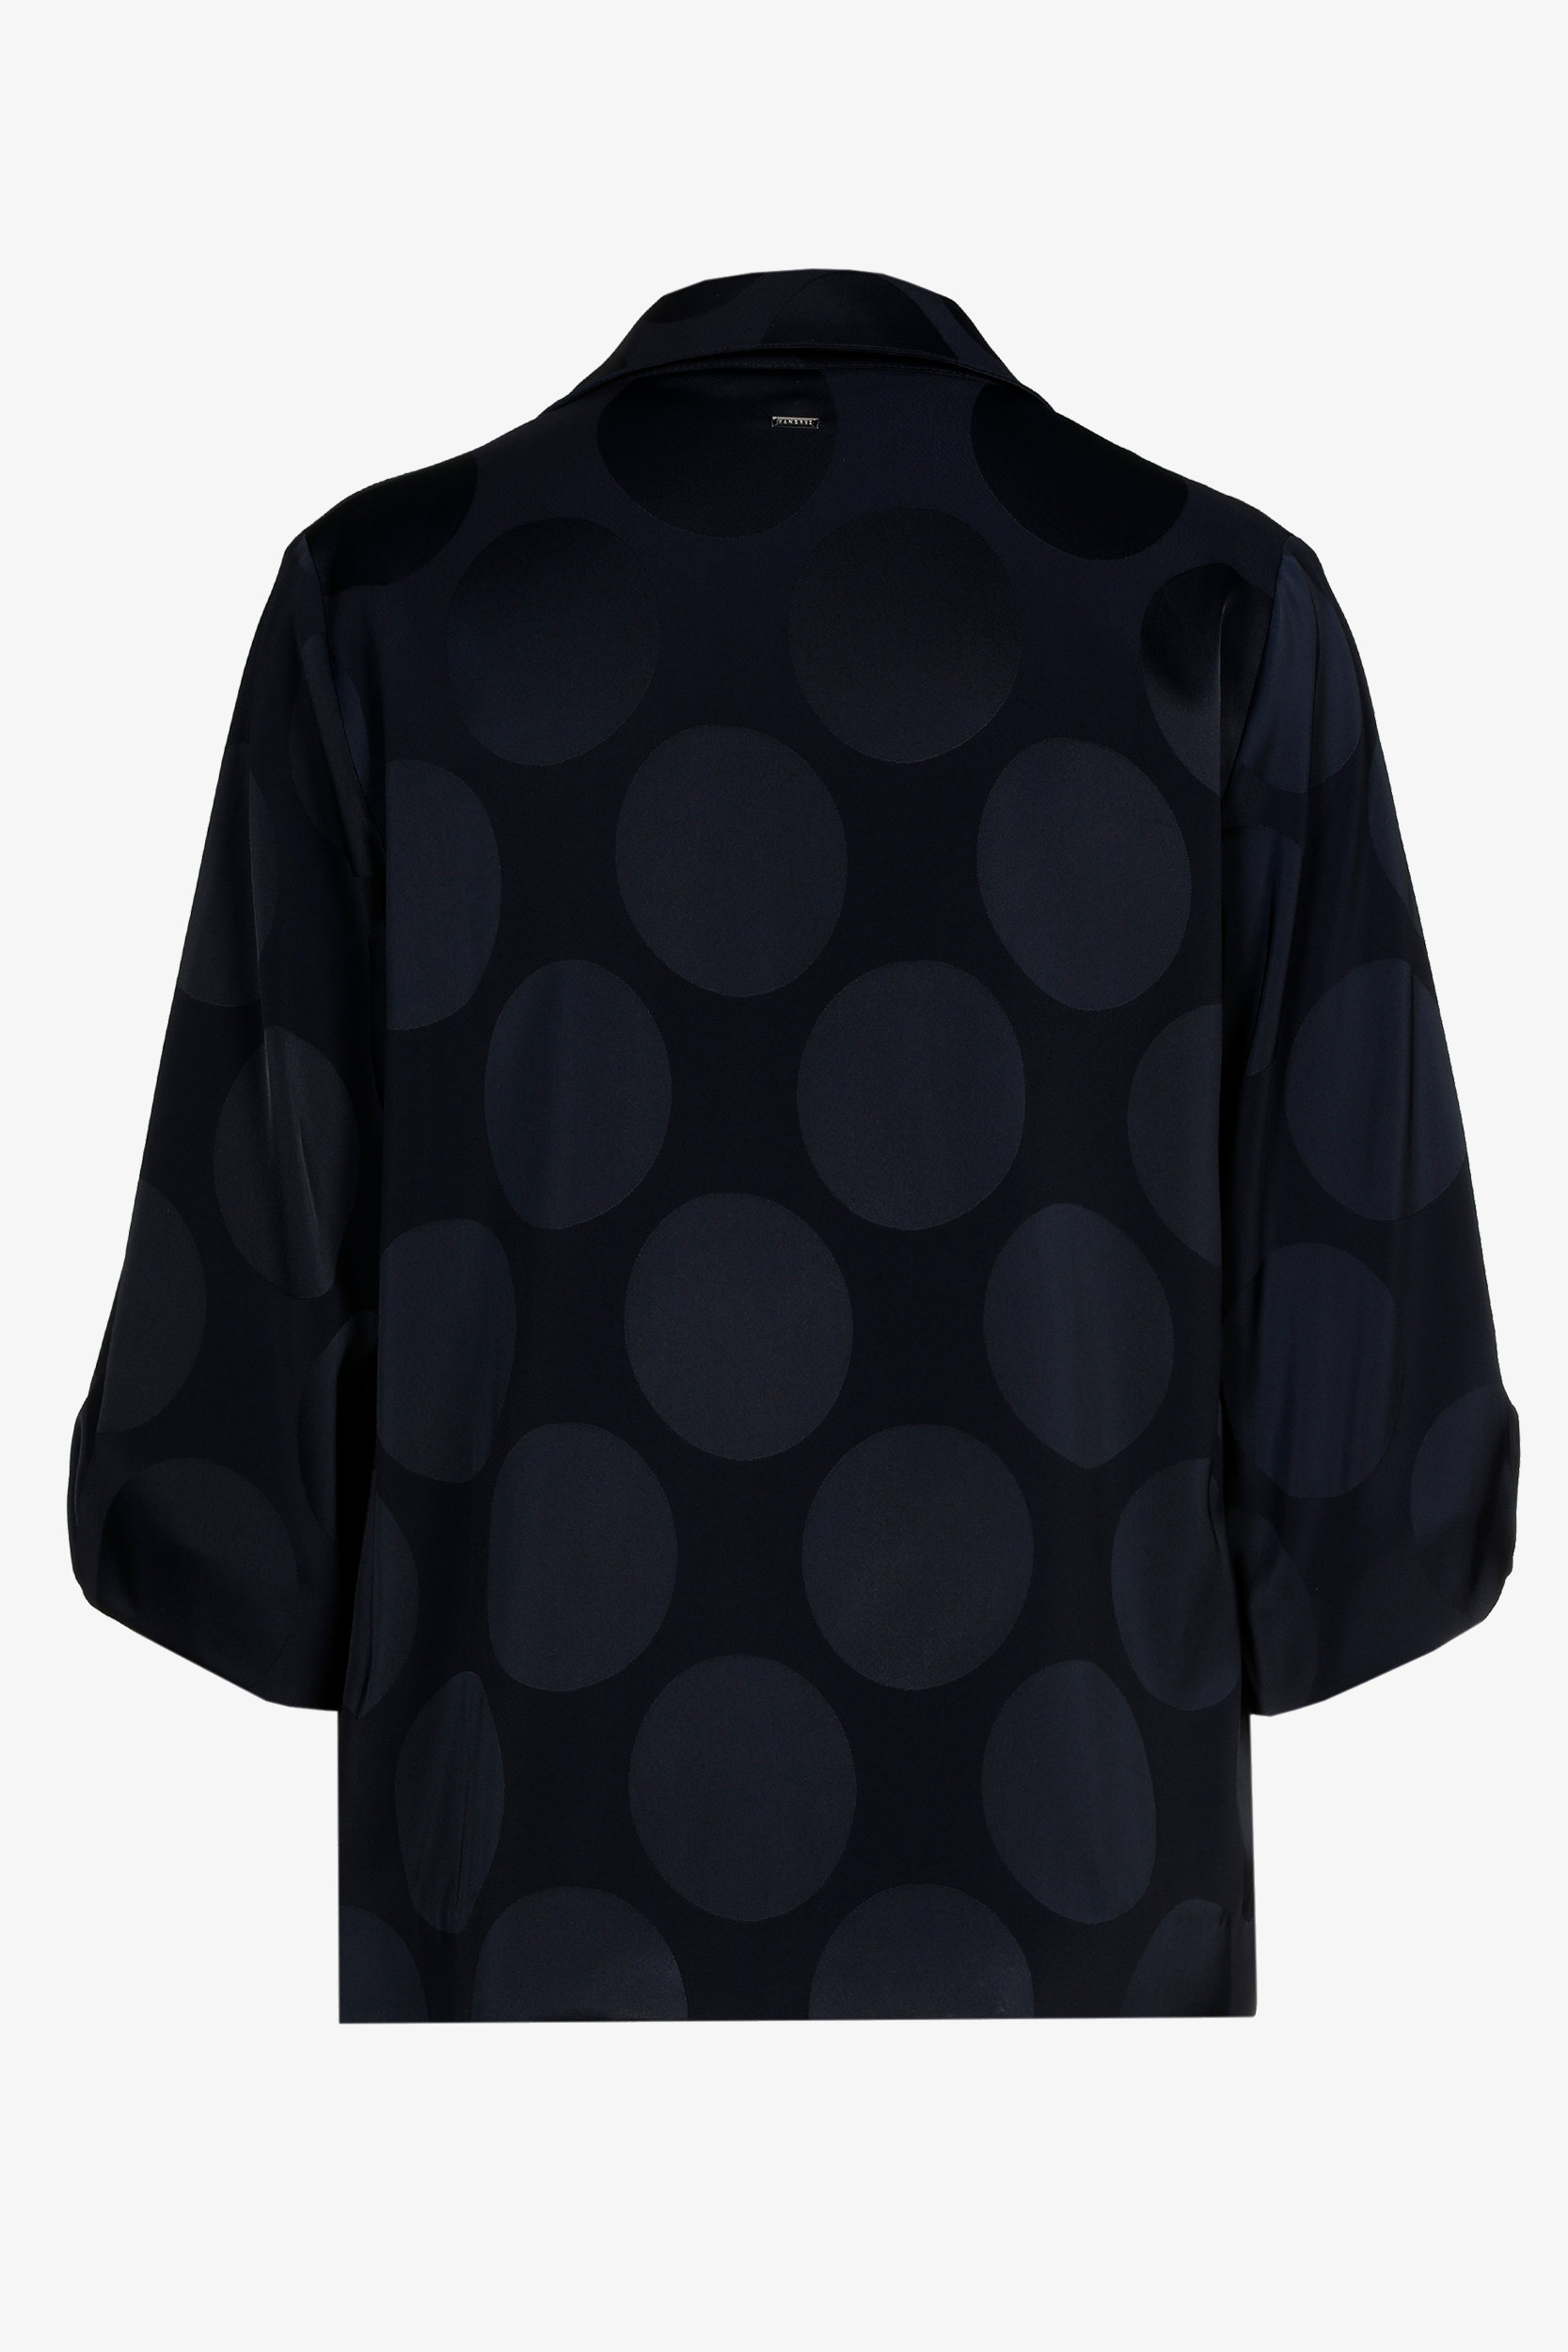 Matt blouse with shiny pattern